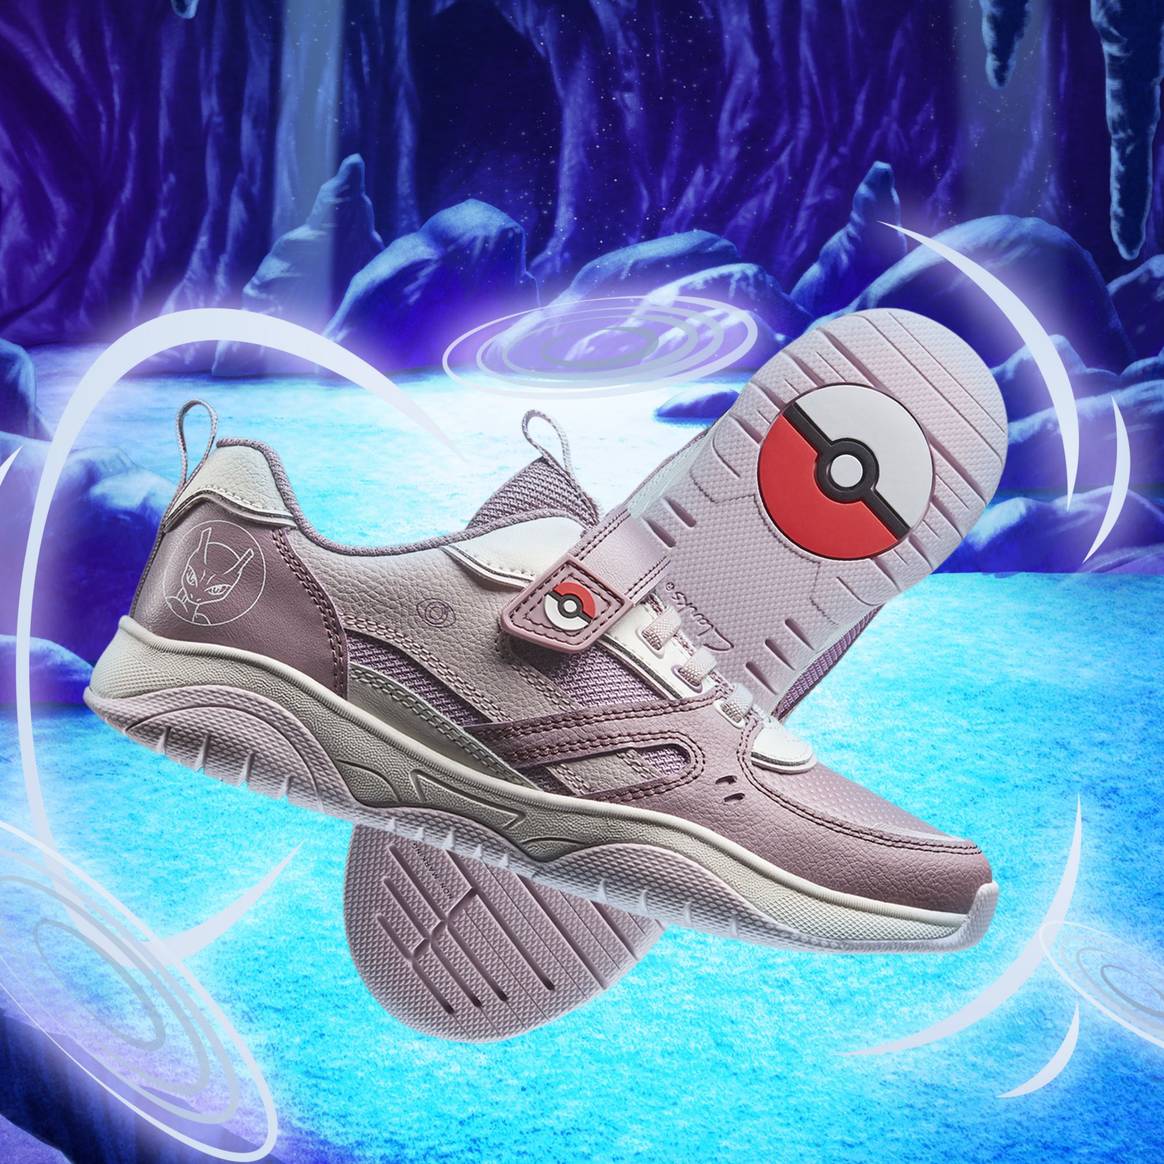 Pokémon x Clarks, courtesy of the brand